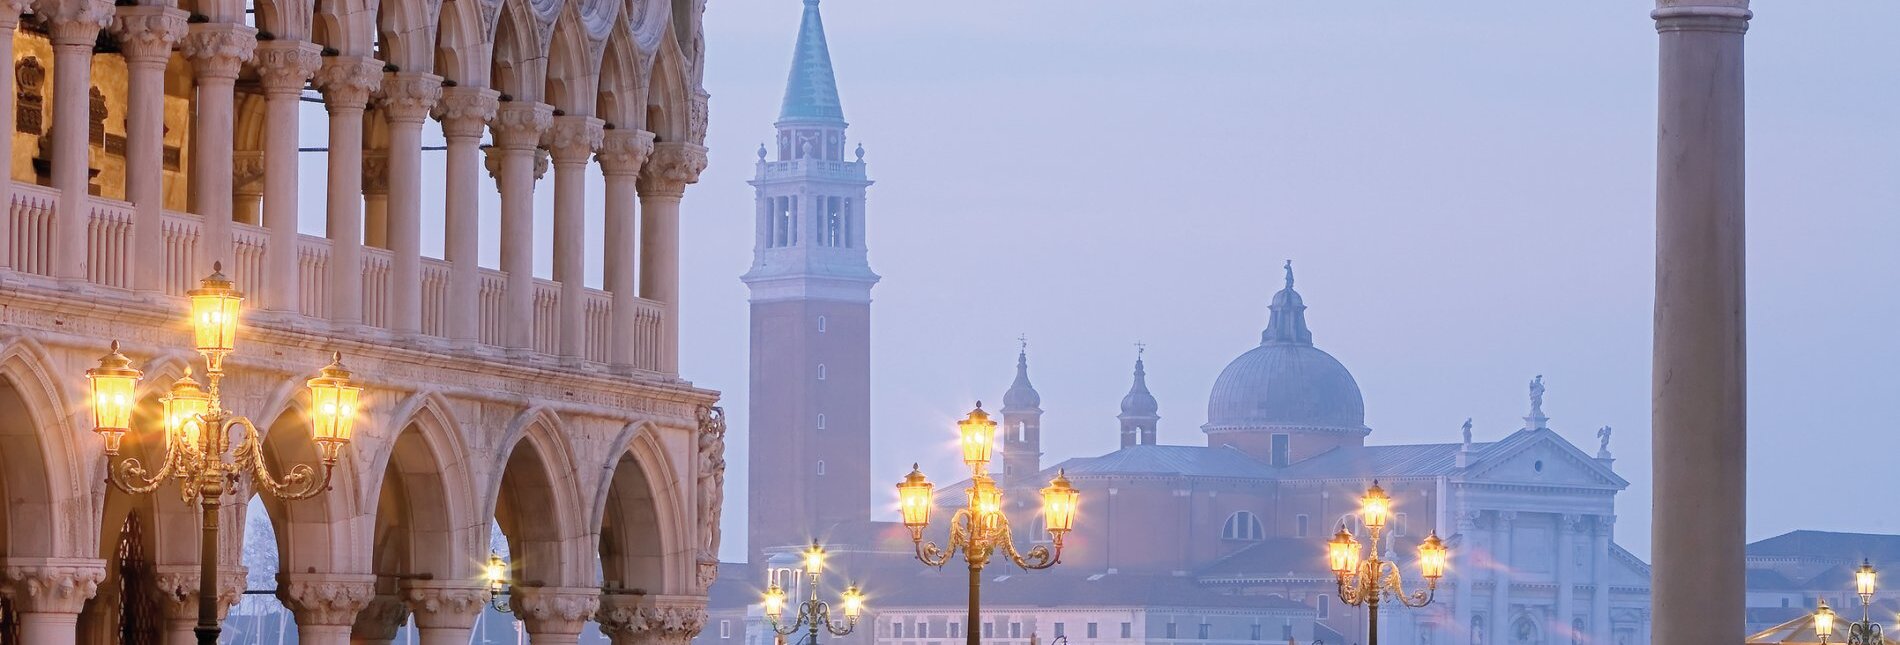 Morgenstimmung am Makusplatz in Venedig